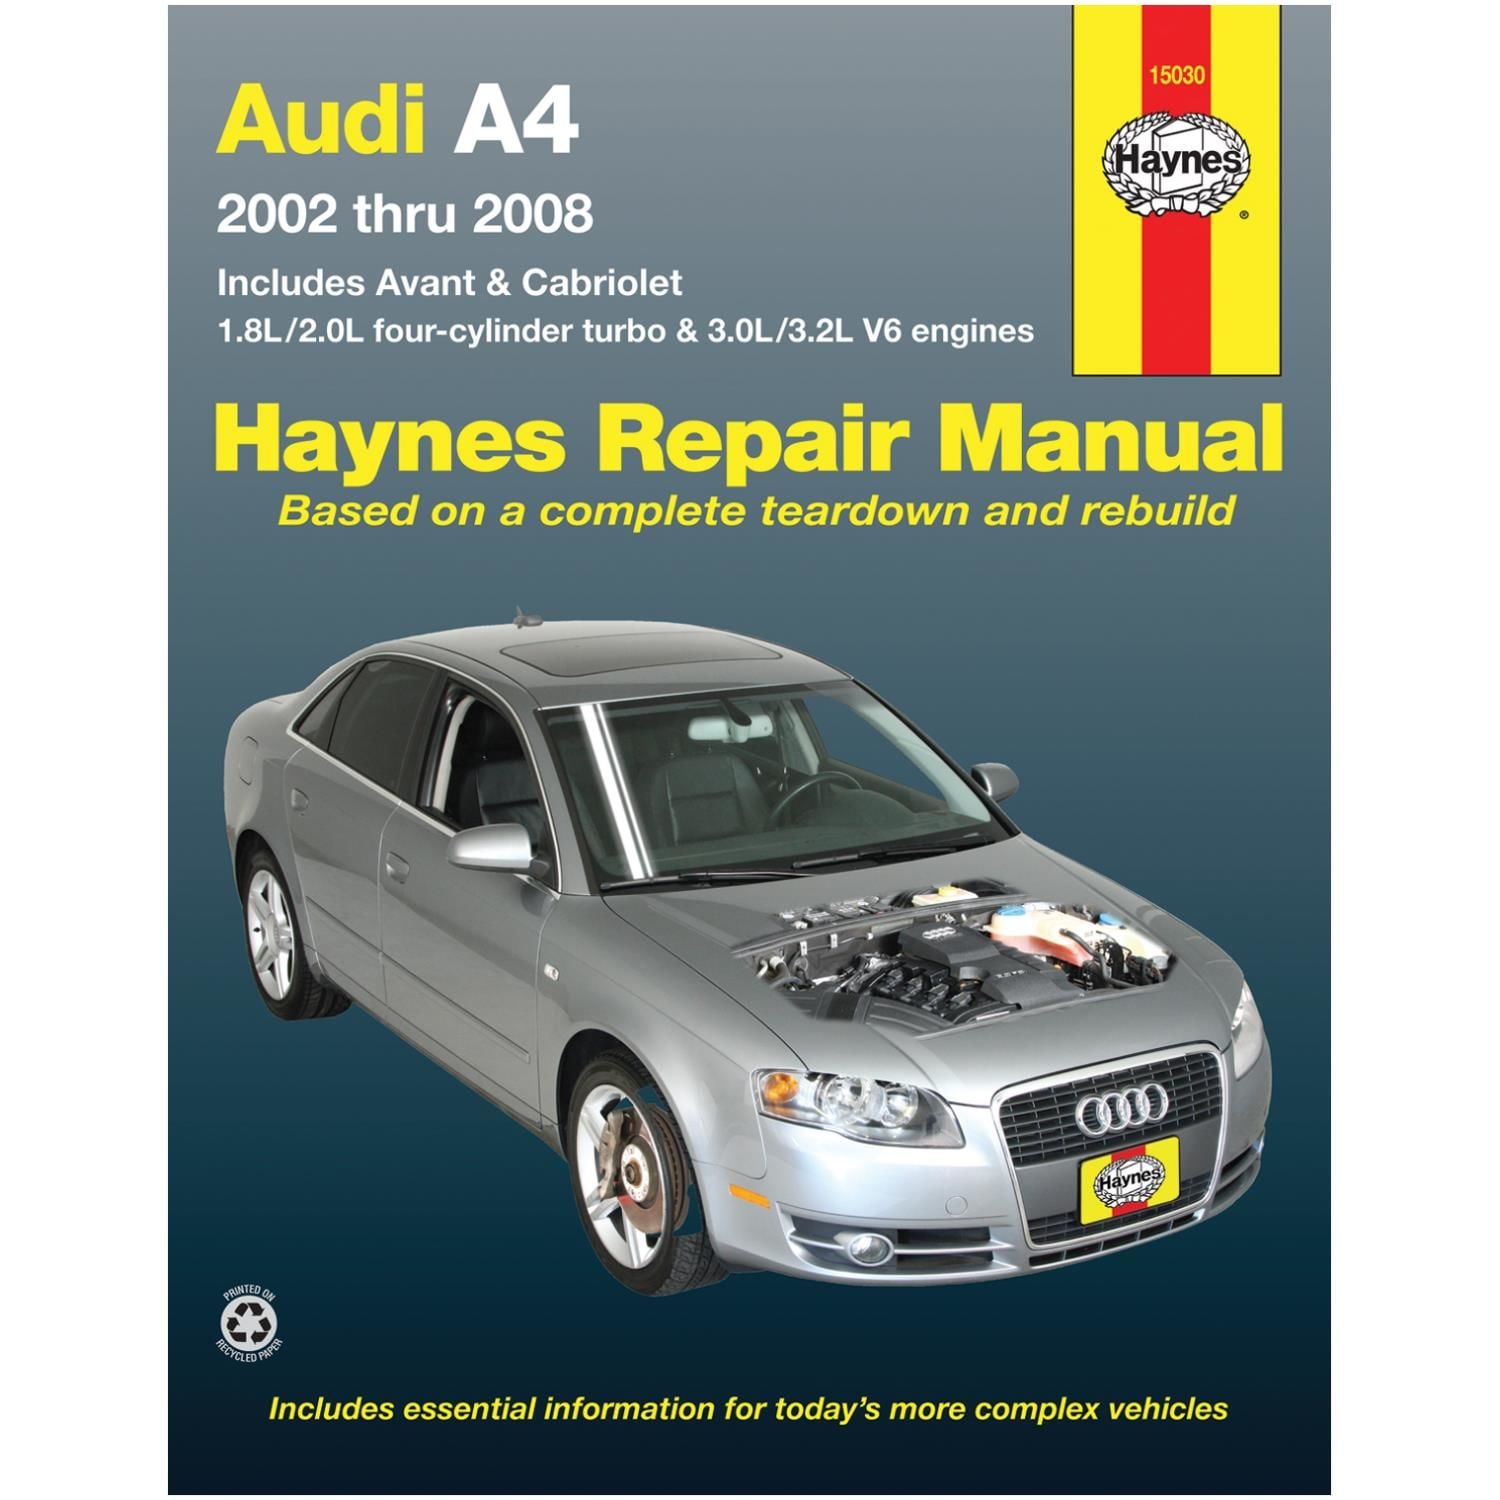 Haynes Repair Manual Technical Book